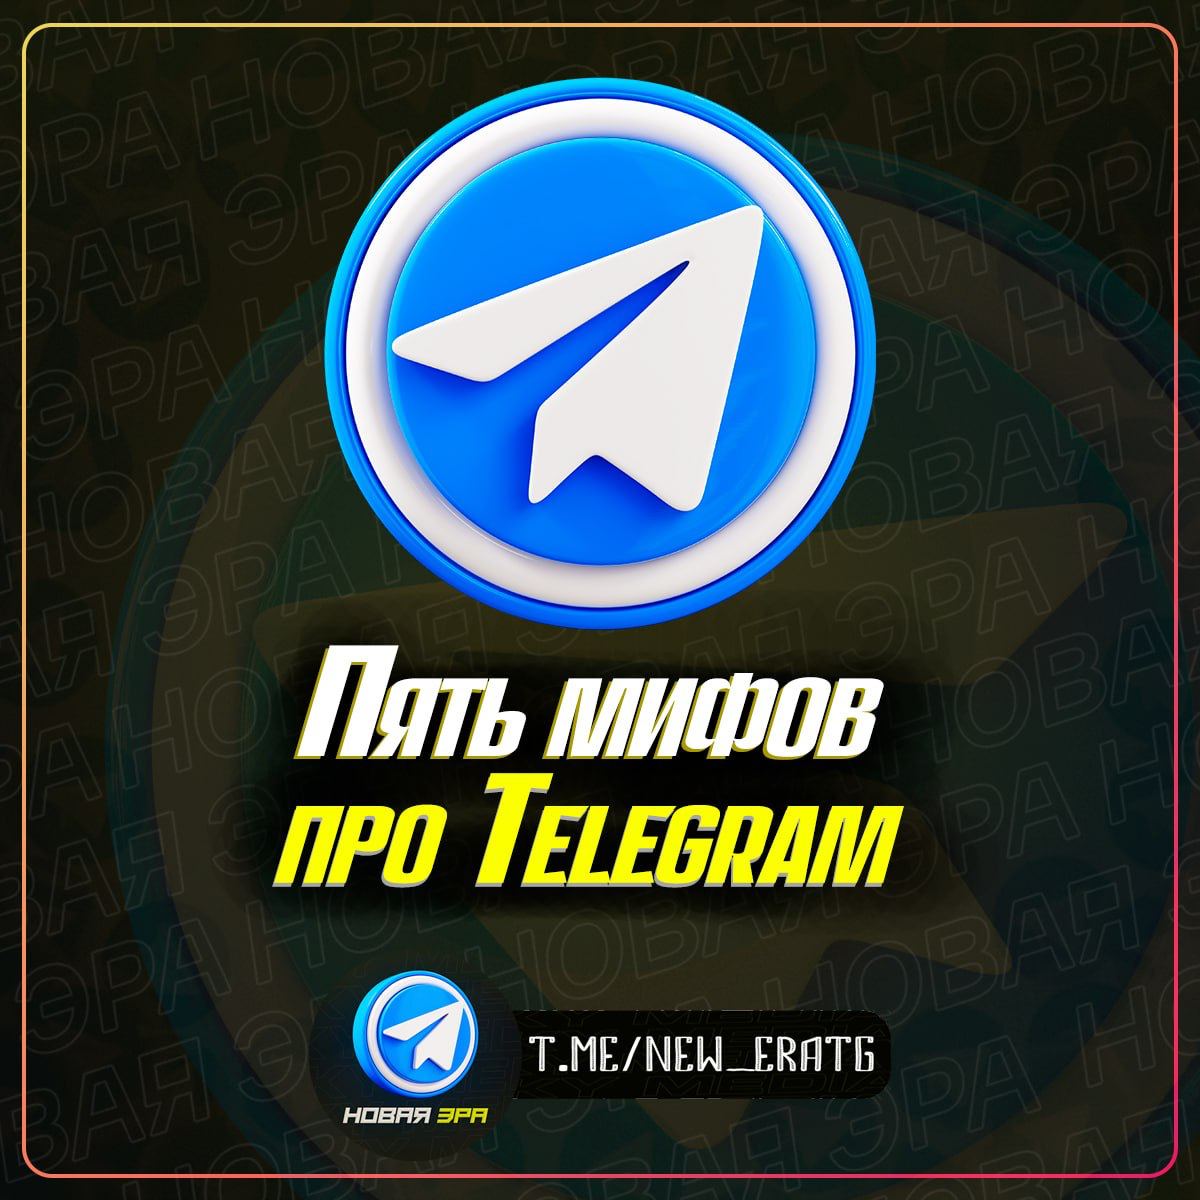 Телеграмм новая версия для андроид на русском языке скачать бесплатно фото 63